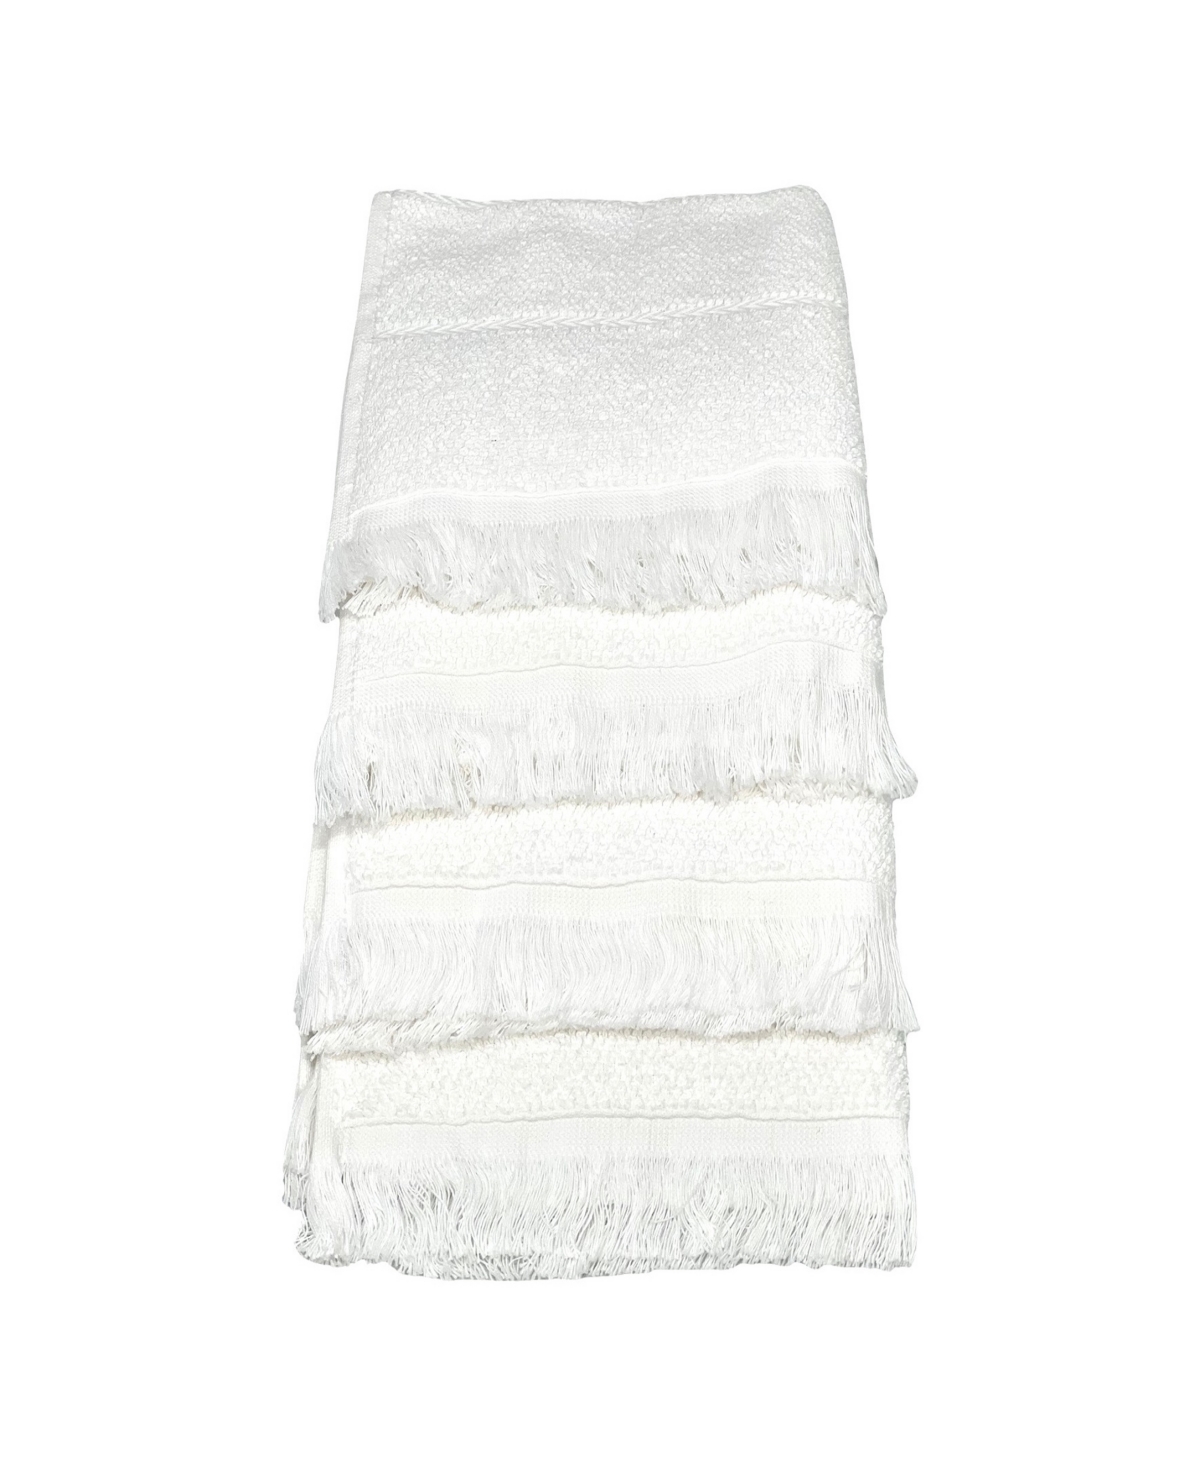 Ozan Premium Home Mirage Collection 4 Piece Turkish Cotton Luxury Washcloth Set Bedding In White